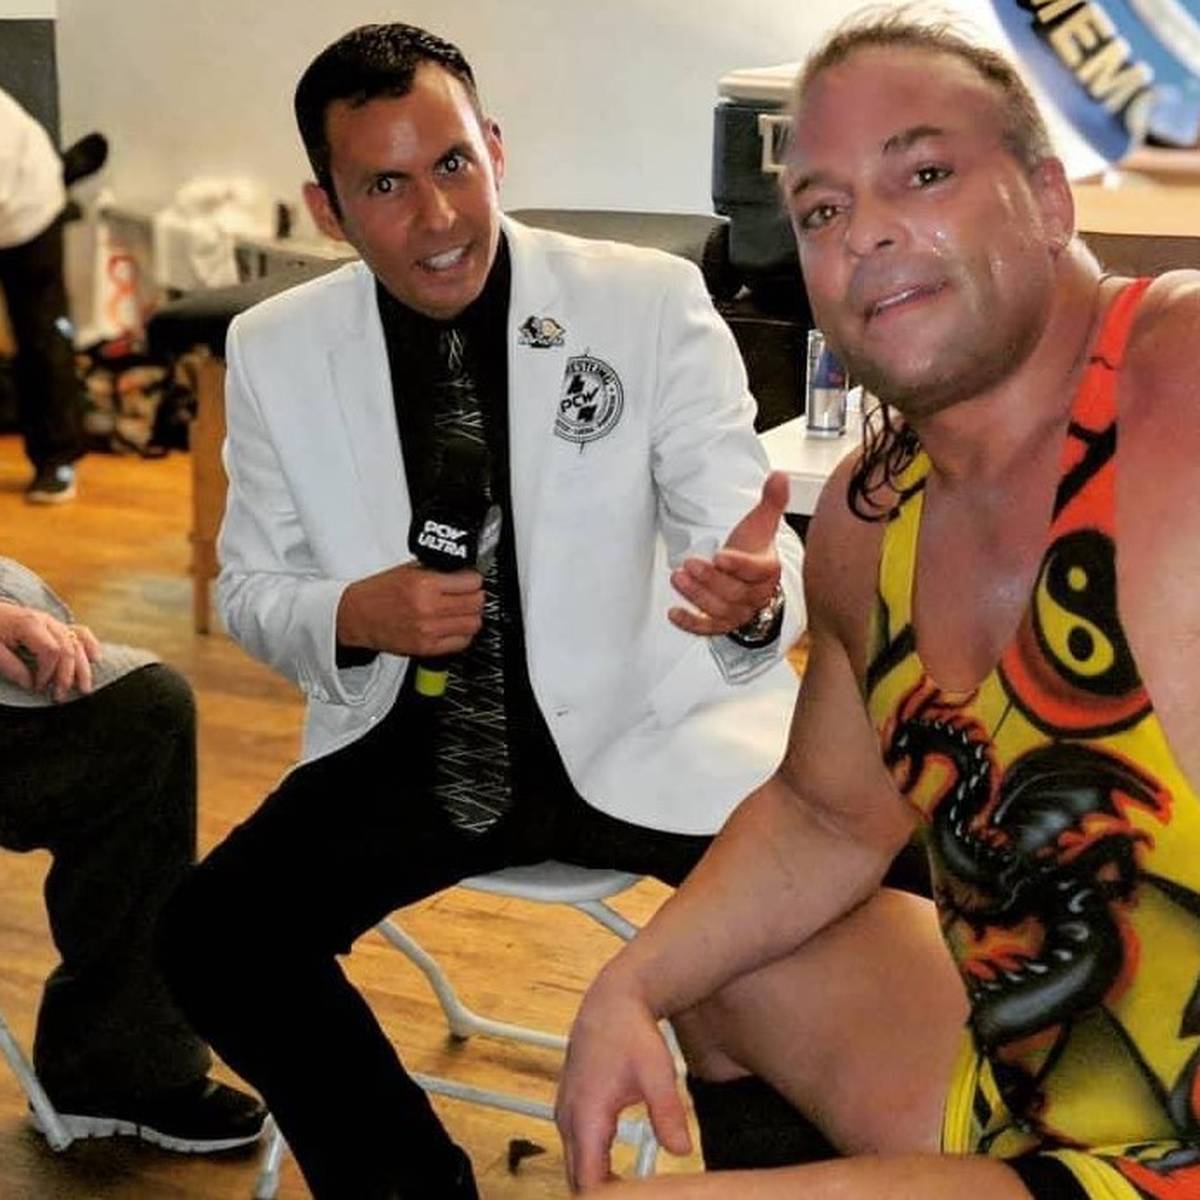 Bei einem Autocrash in El Salvador kommt der früher auch im WWE-Umfeld aktive Wrestling-Ansager Dan Masters ums Leben. Diverse prominente Weggefährten reagieren bestürzt.